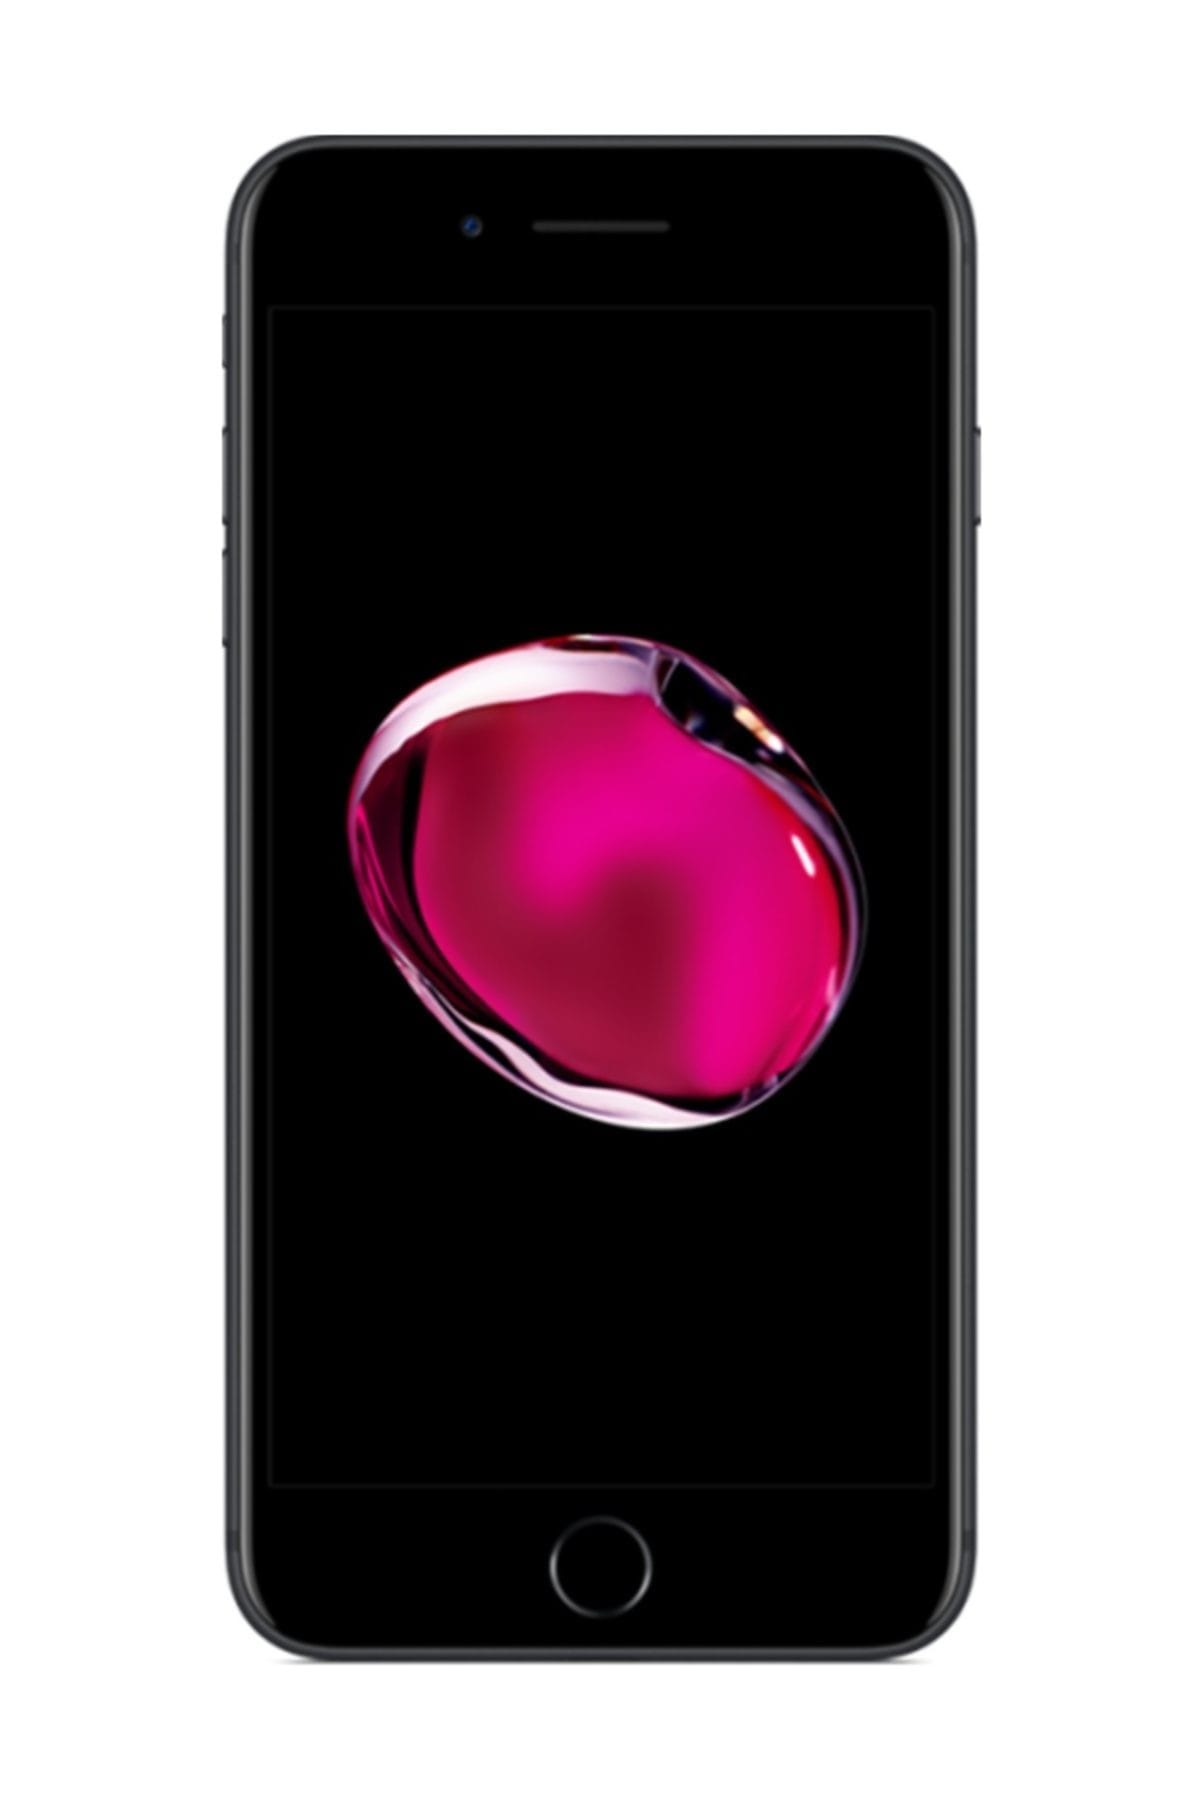 iPhone 7 Plus 32GB Siyah Cep Telefonu (Apple Türkiye Garantili)